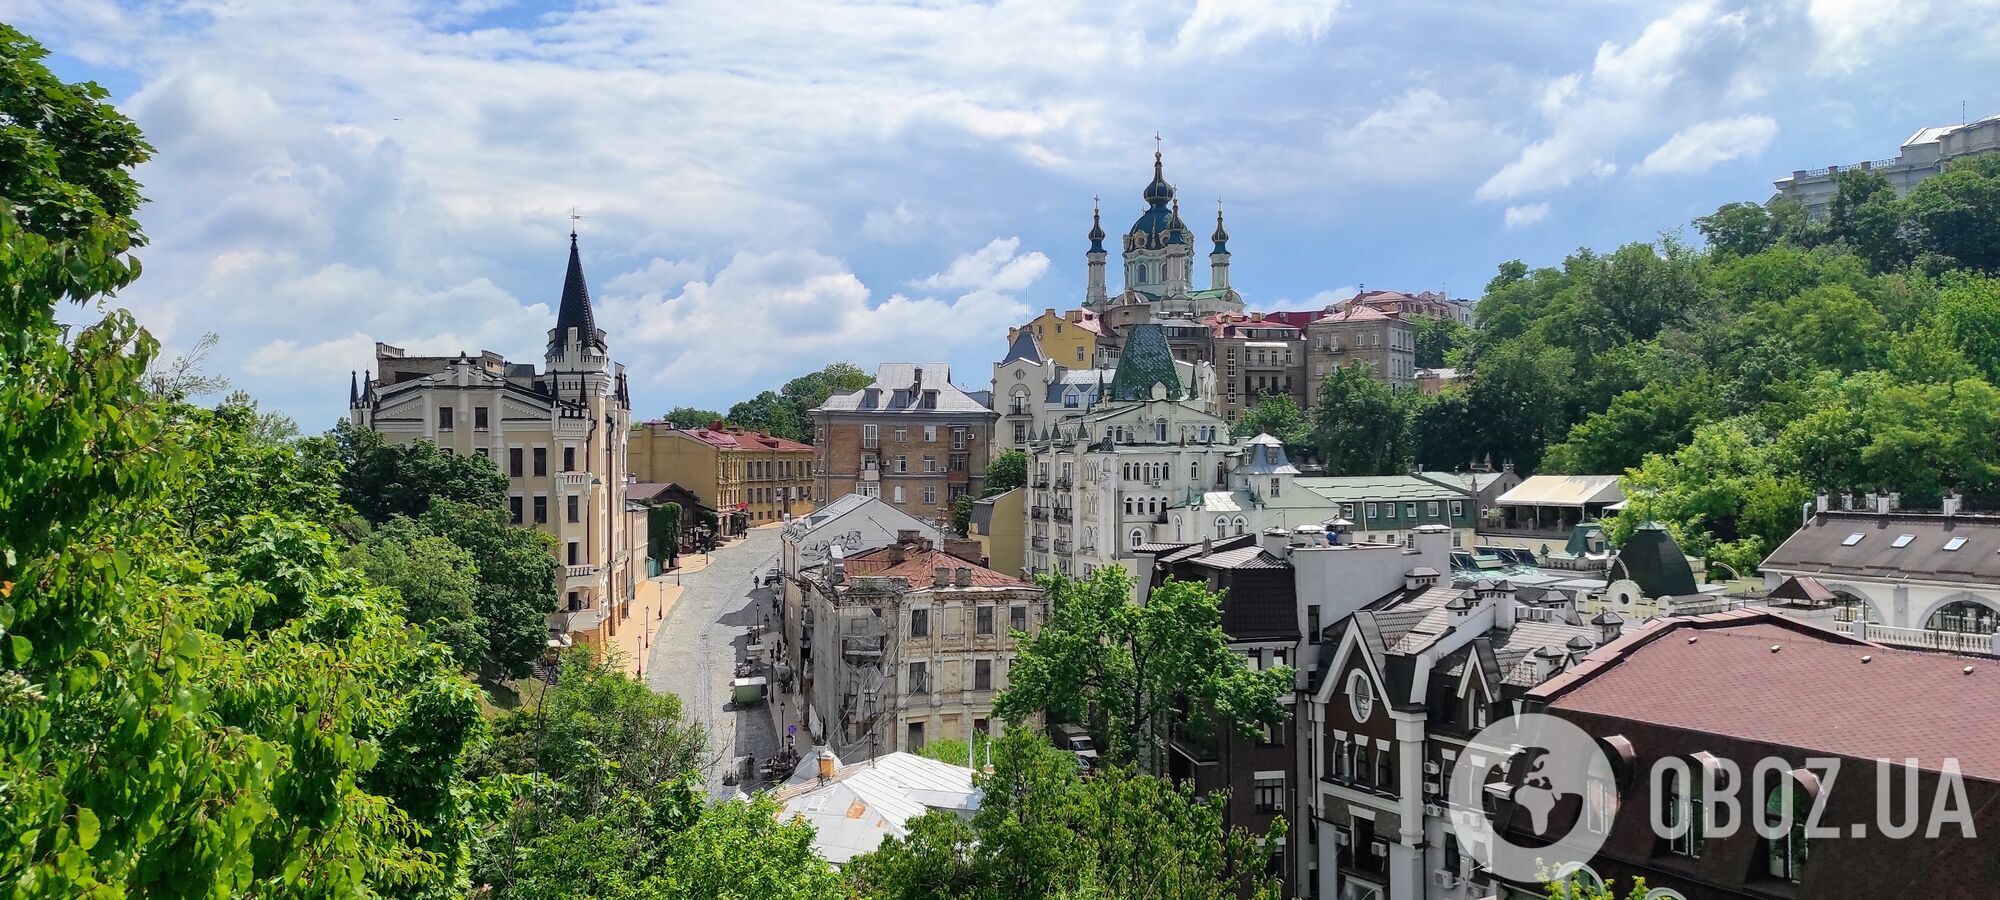 Улица, связывающая Верхний город Киева и Подол: история и уникальные фото Андреевского спуска